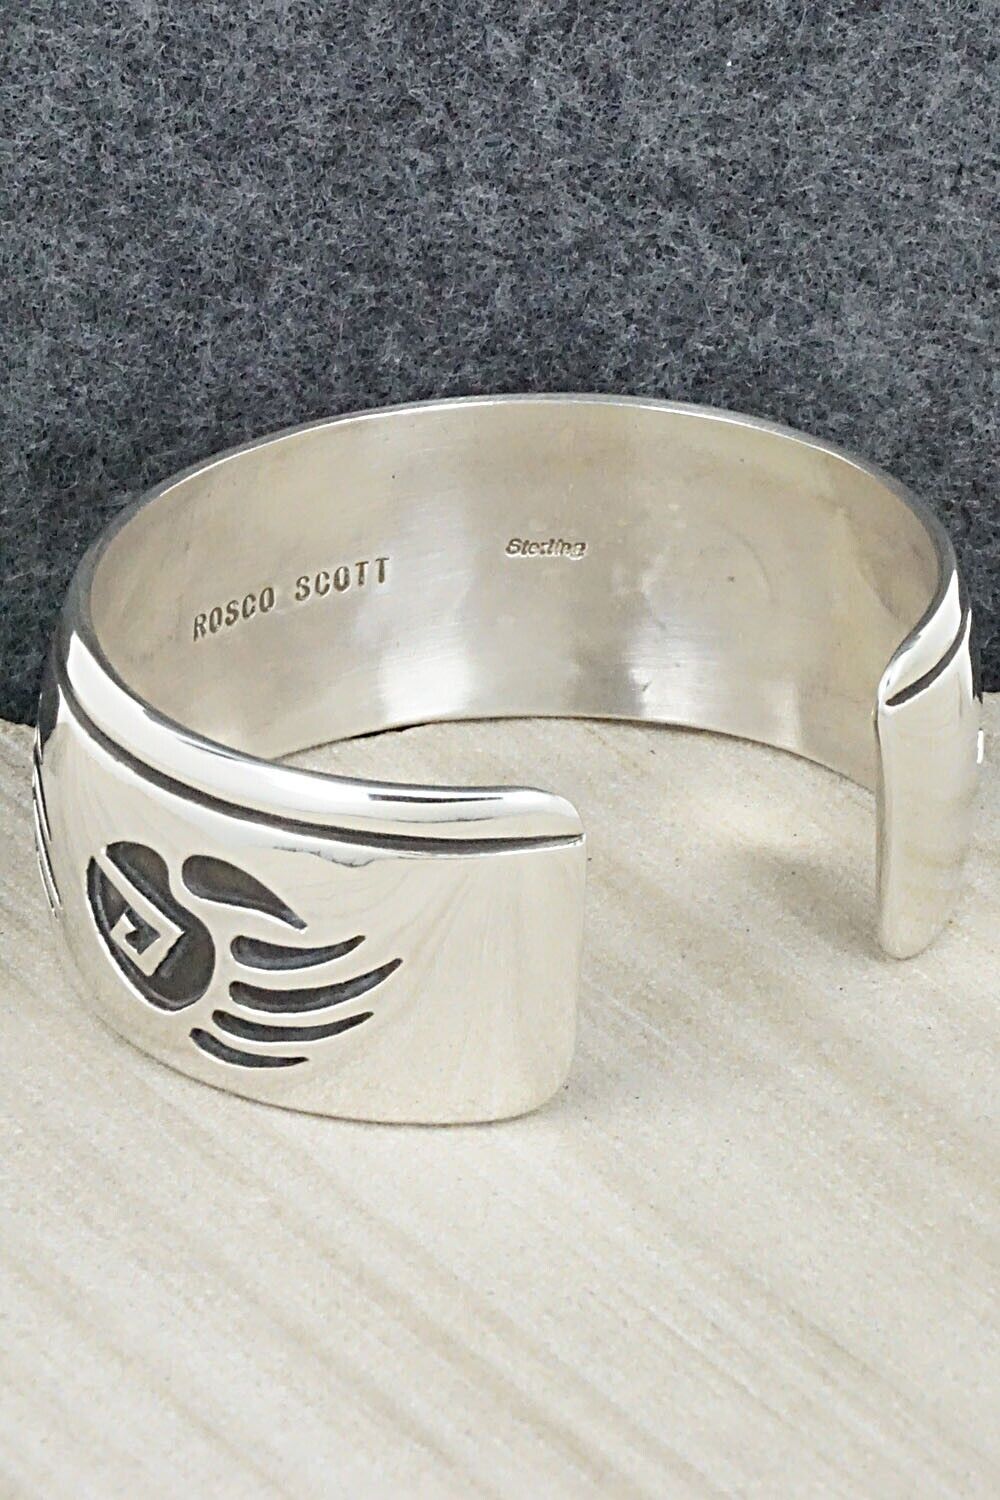 Sterling Silver Bracelet - Rosco Scott